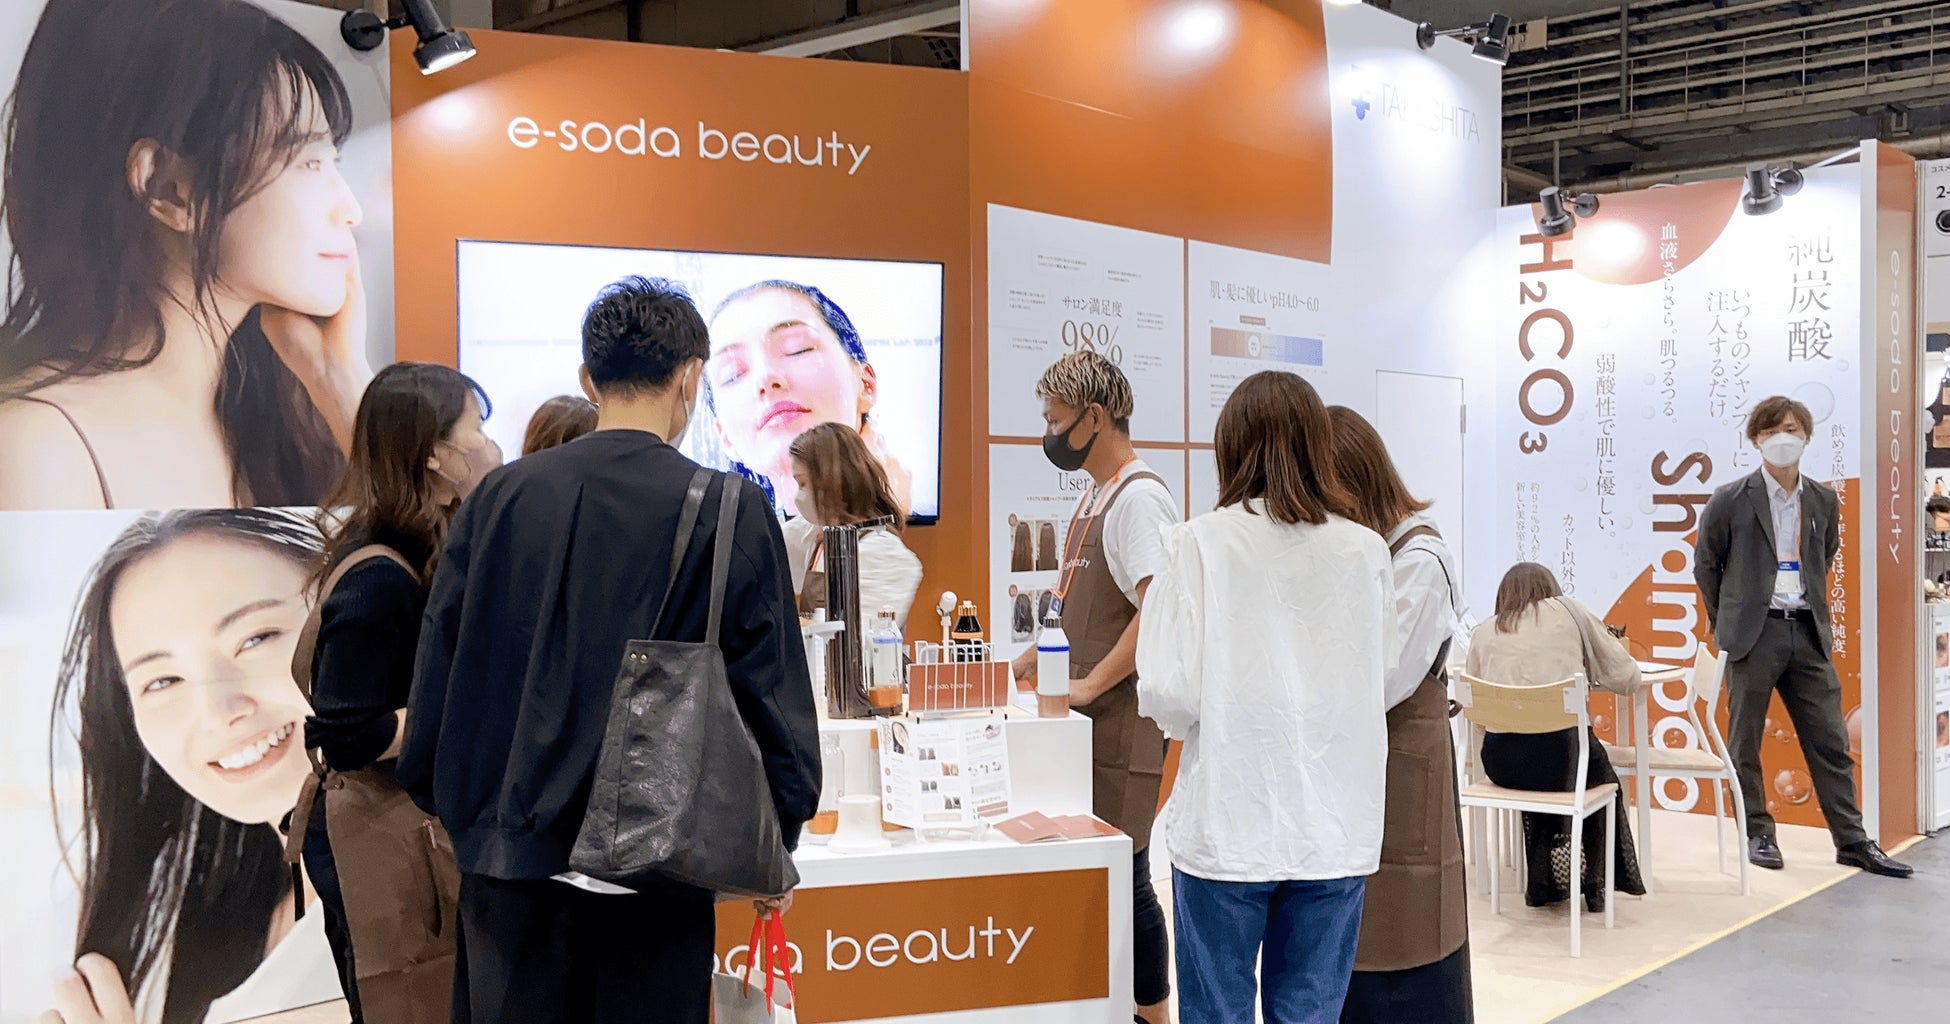 お好みのシャンプーや美容液を炭酸化できる「e-soda beauty」が国内最大規模のビューティーイベント「Beauty World Japan OSAKA」に初出展！